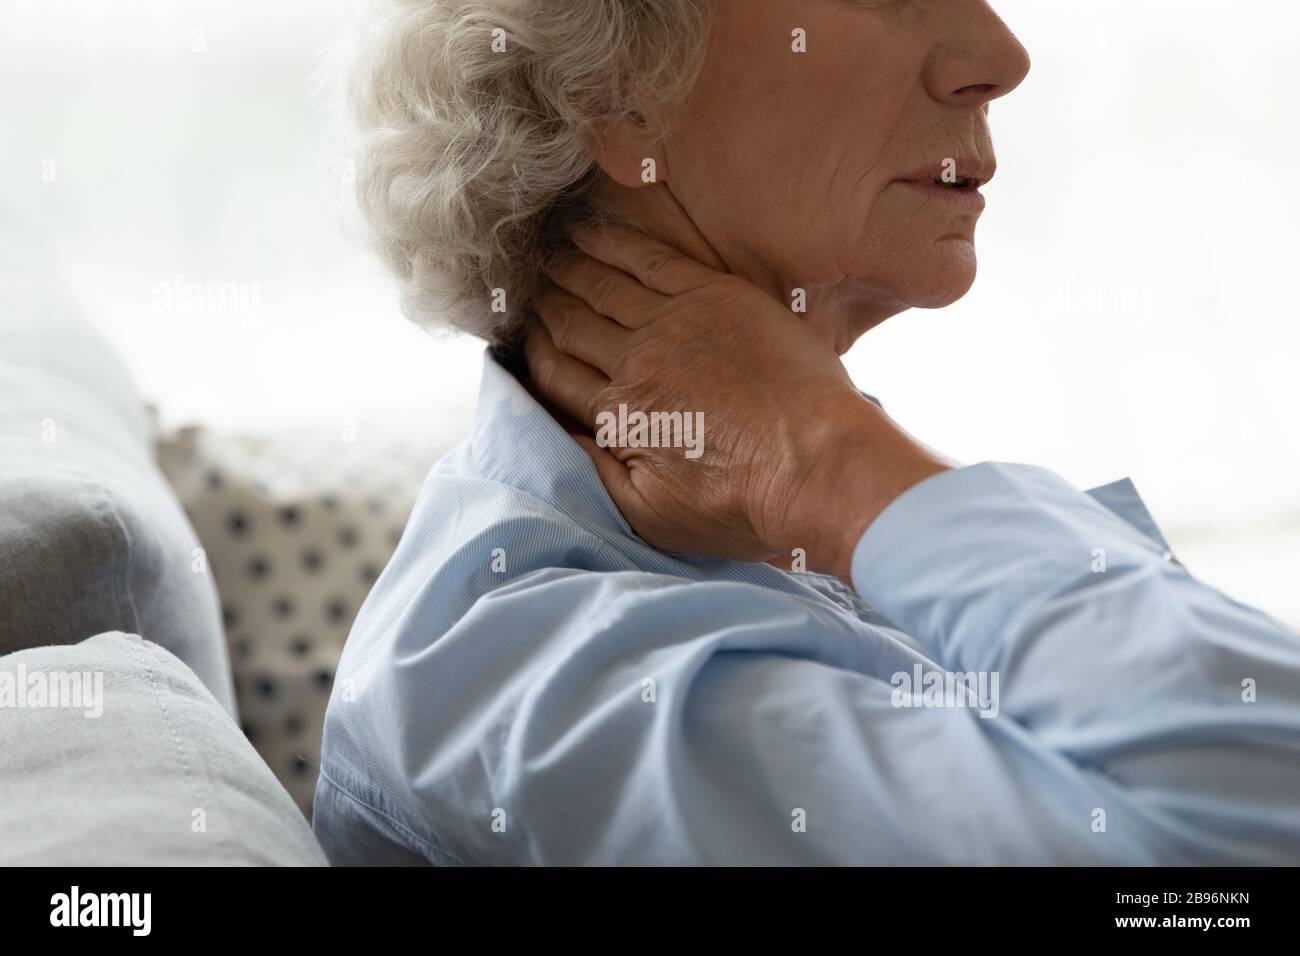 Una mujer anciana enferma toca el cuello y sufre de dolor Foto de stock